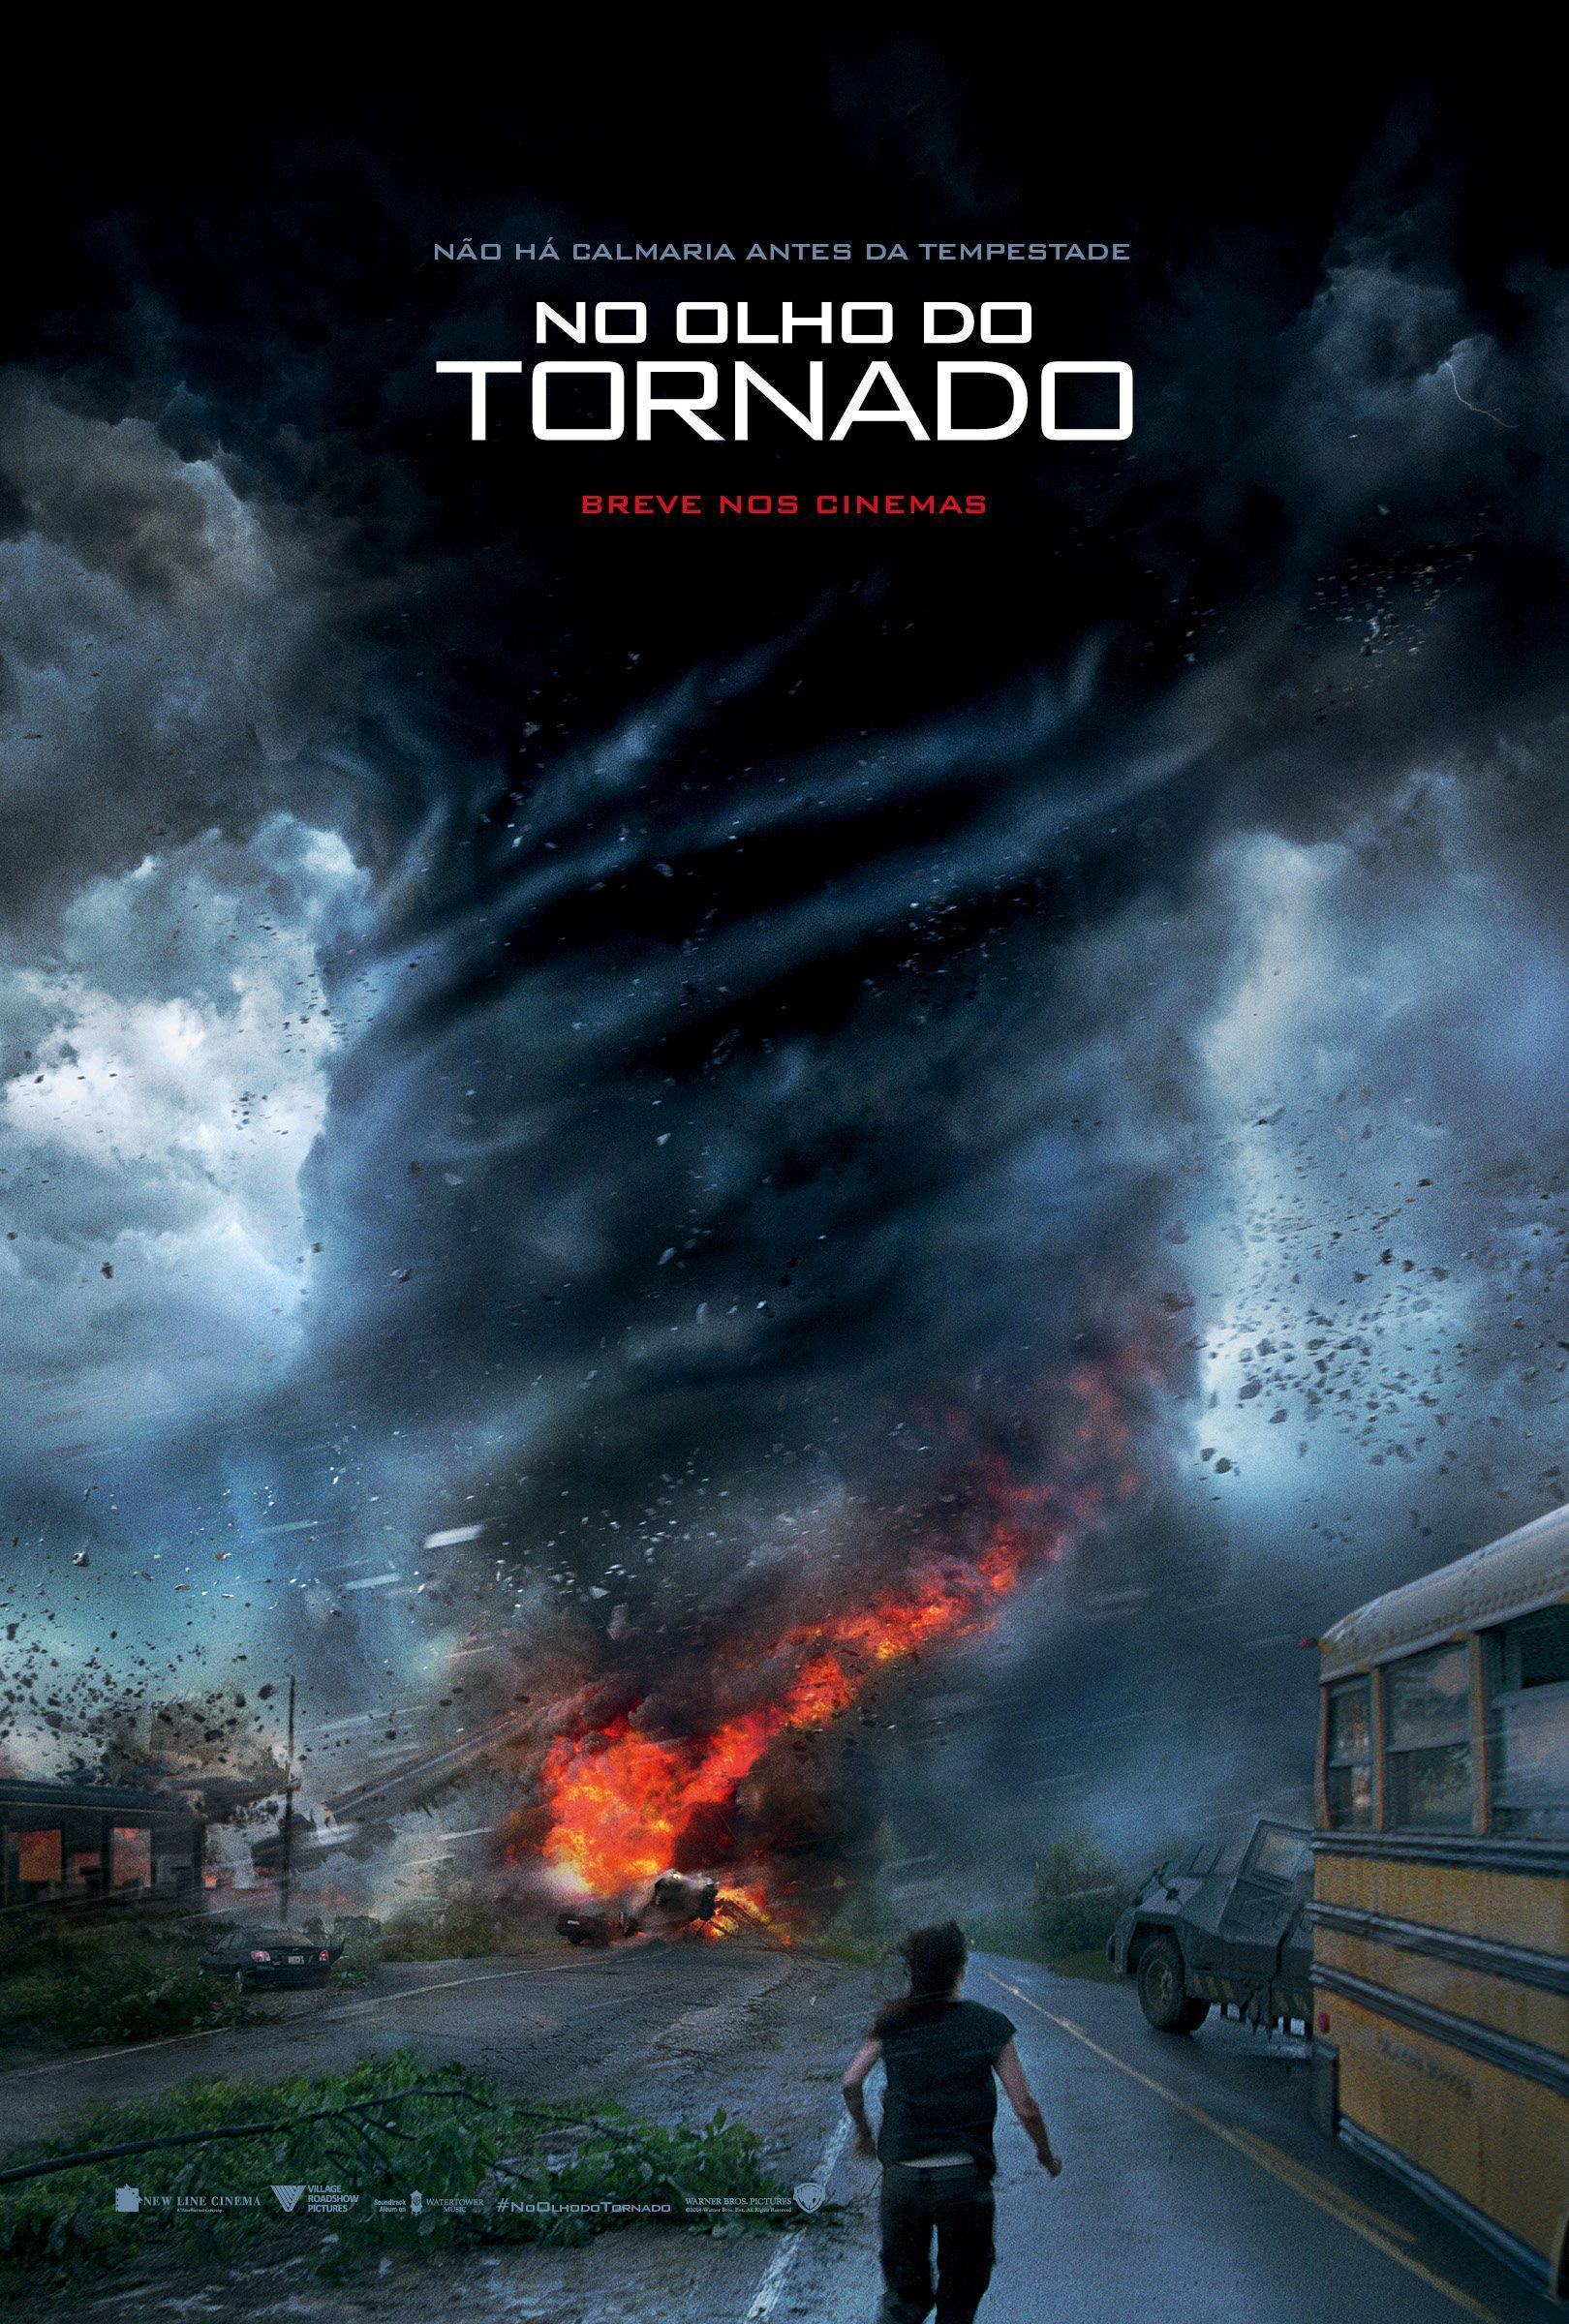 No-Olho-do-Tornado-poster